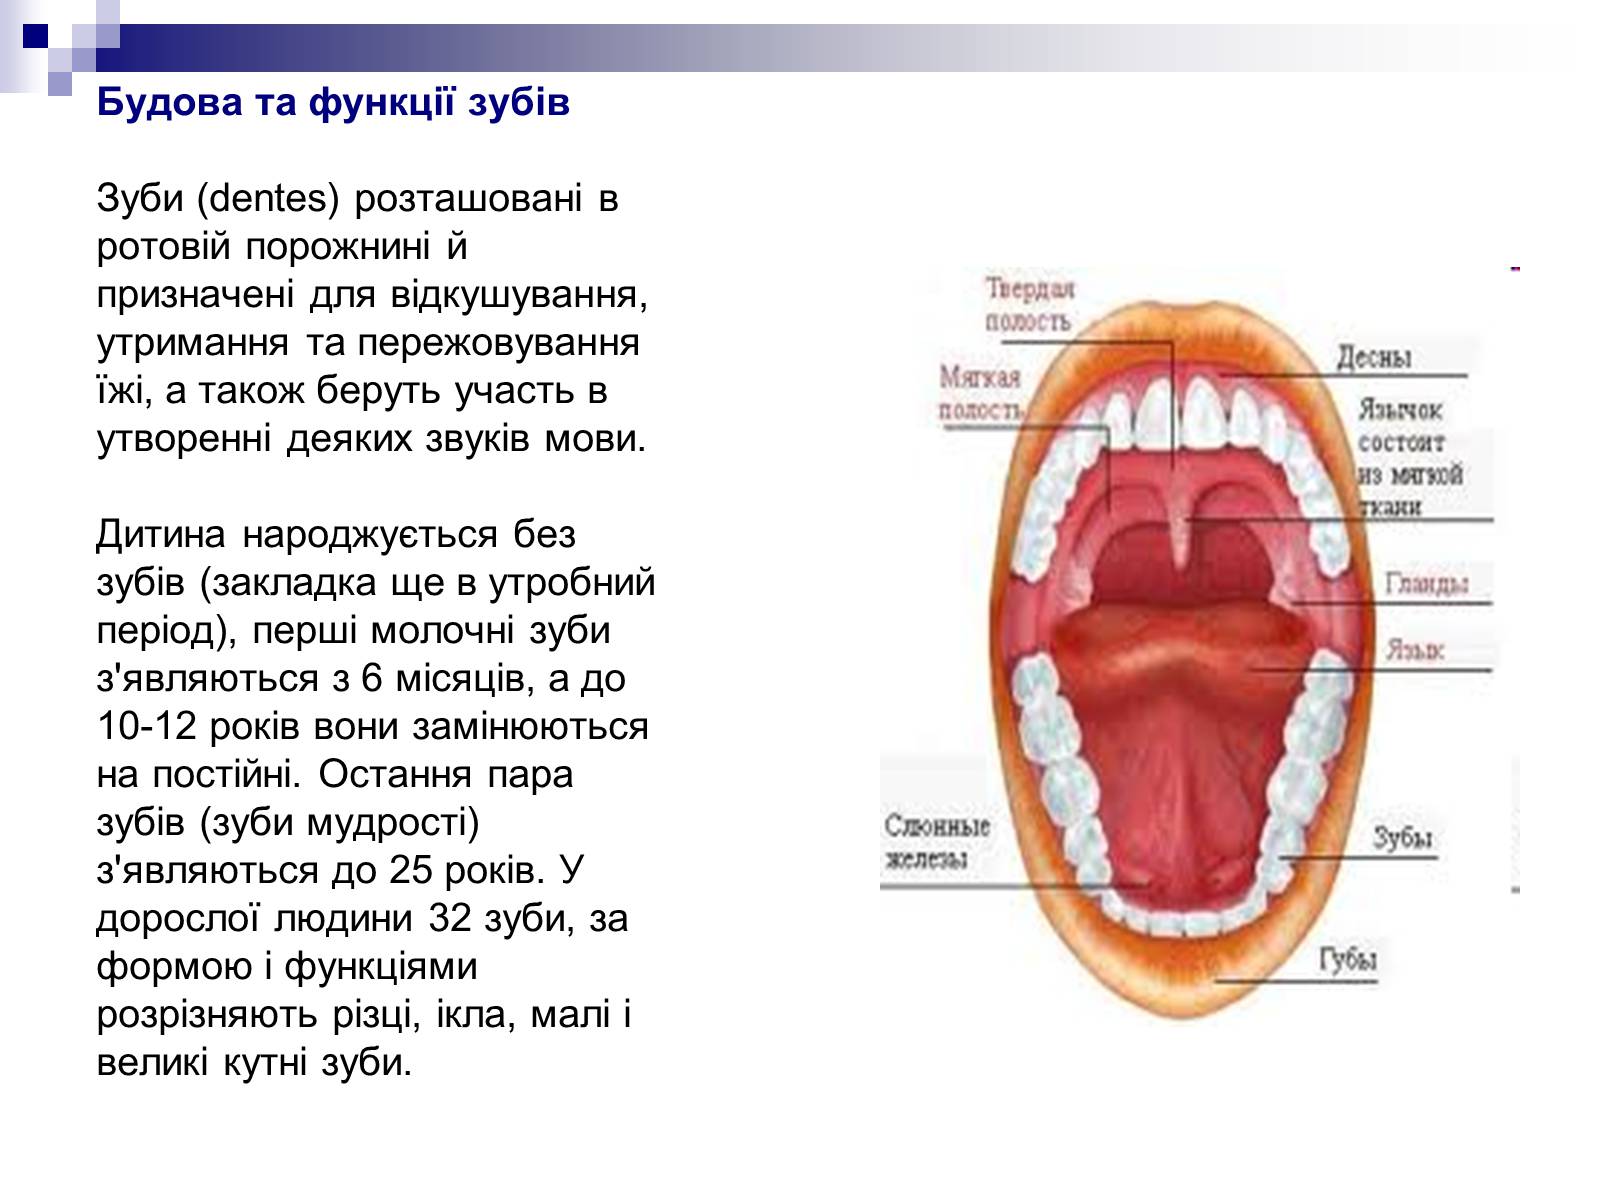 Описание полости рта. Органы ротовой пролимти. Органы полости рта анатомия.